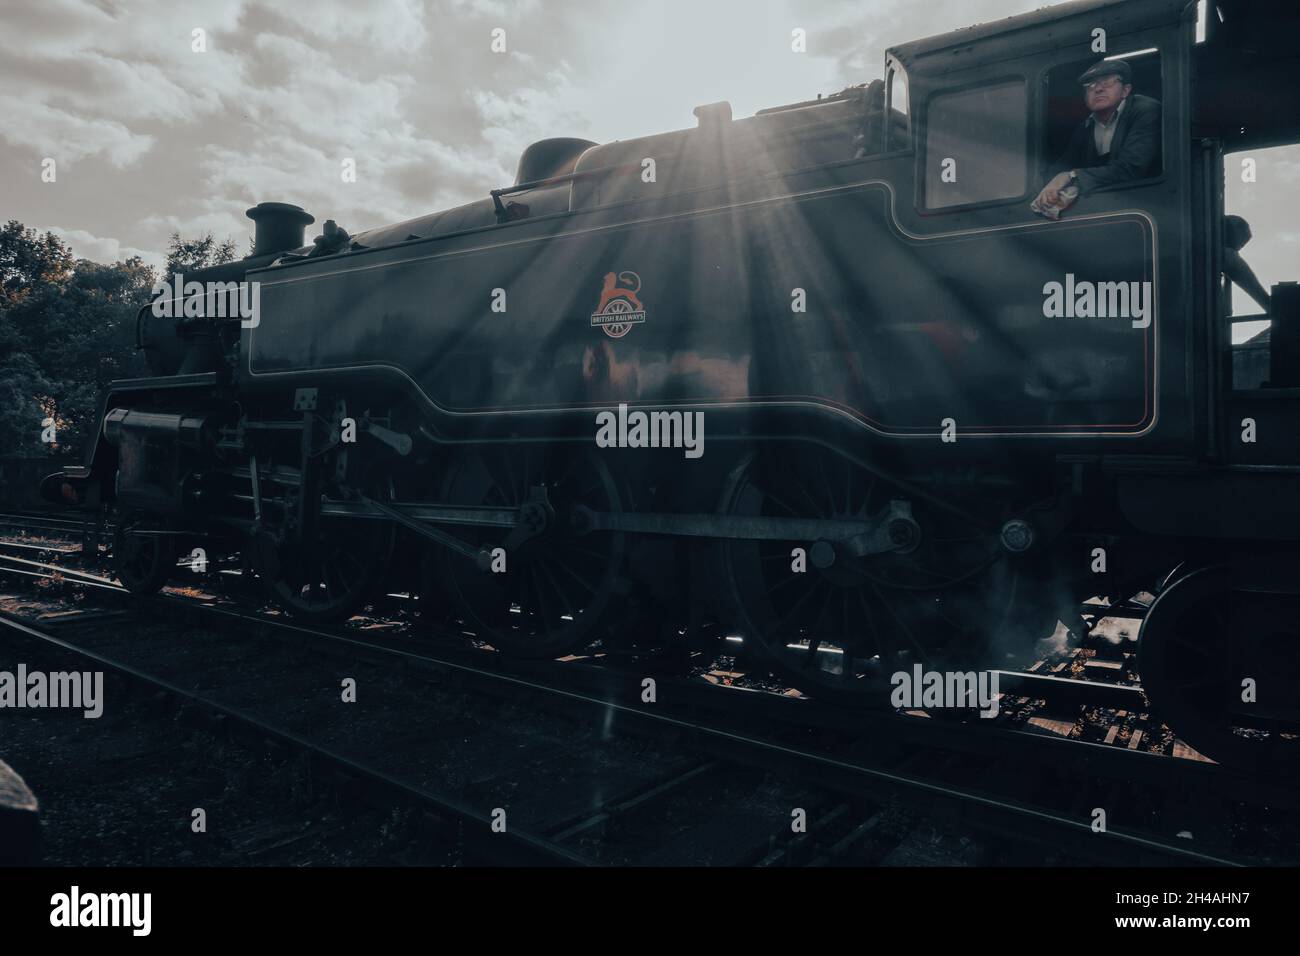 Fotografia suggestiva e nostalgica del treno a vapore, il Moorlander, che lascia la stazione di Grosmont sulla North York Moors Heritage Railway con treno in macchina Foto Stock